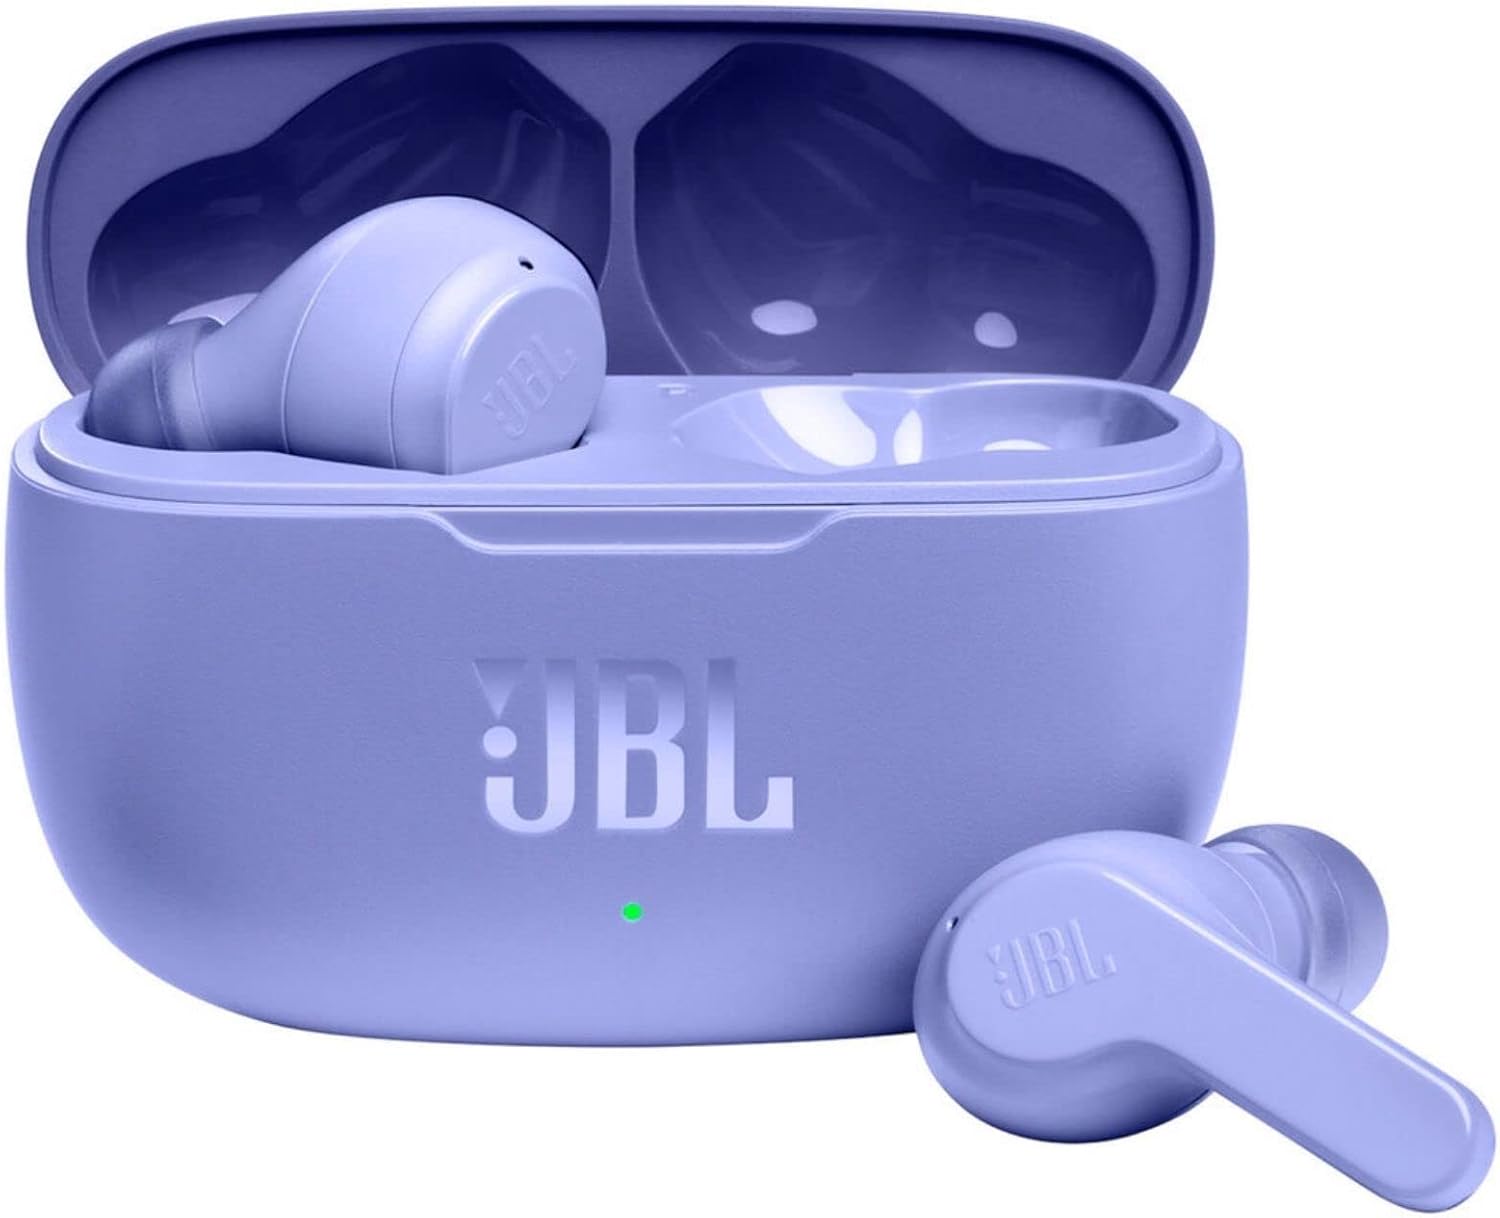 BL Vibe 200TWS True Wireless Earbuds - Purple